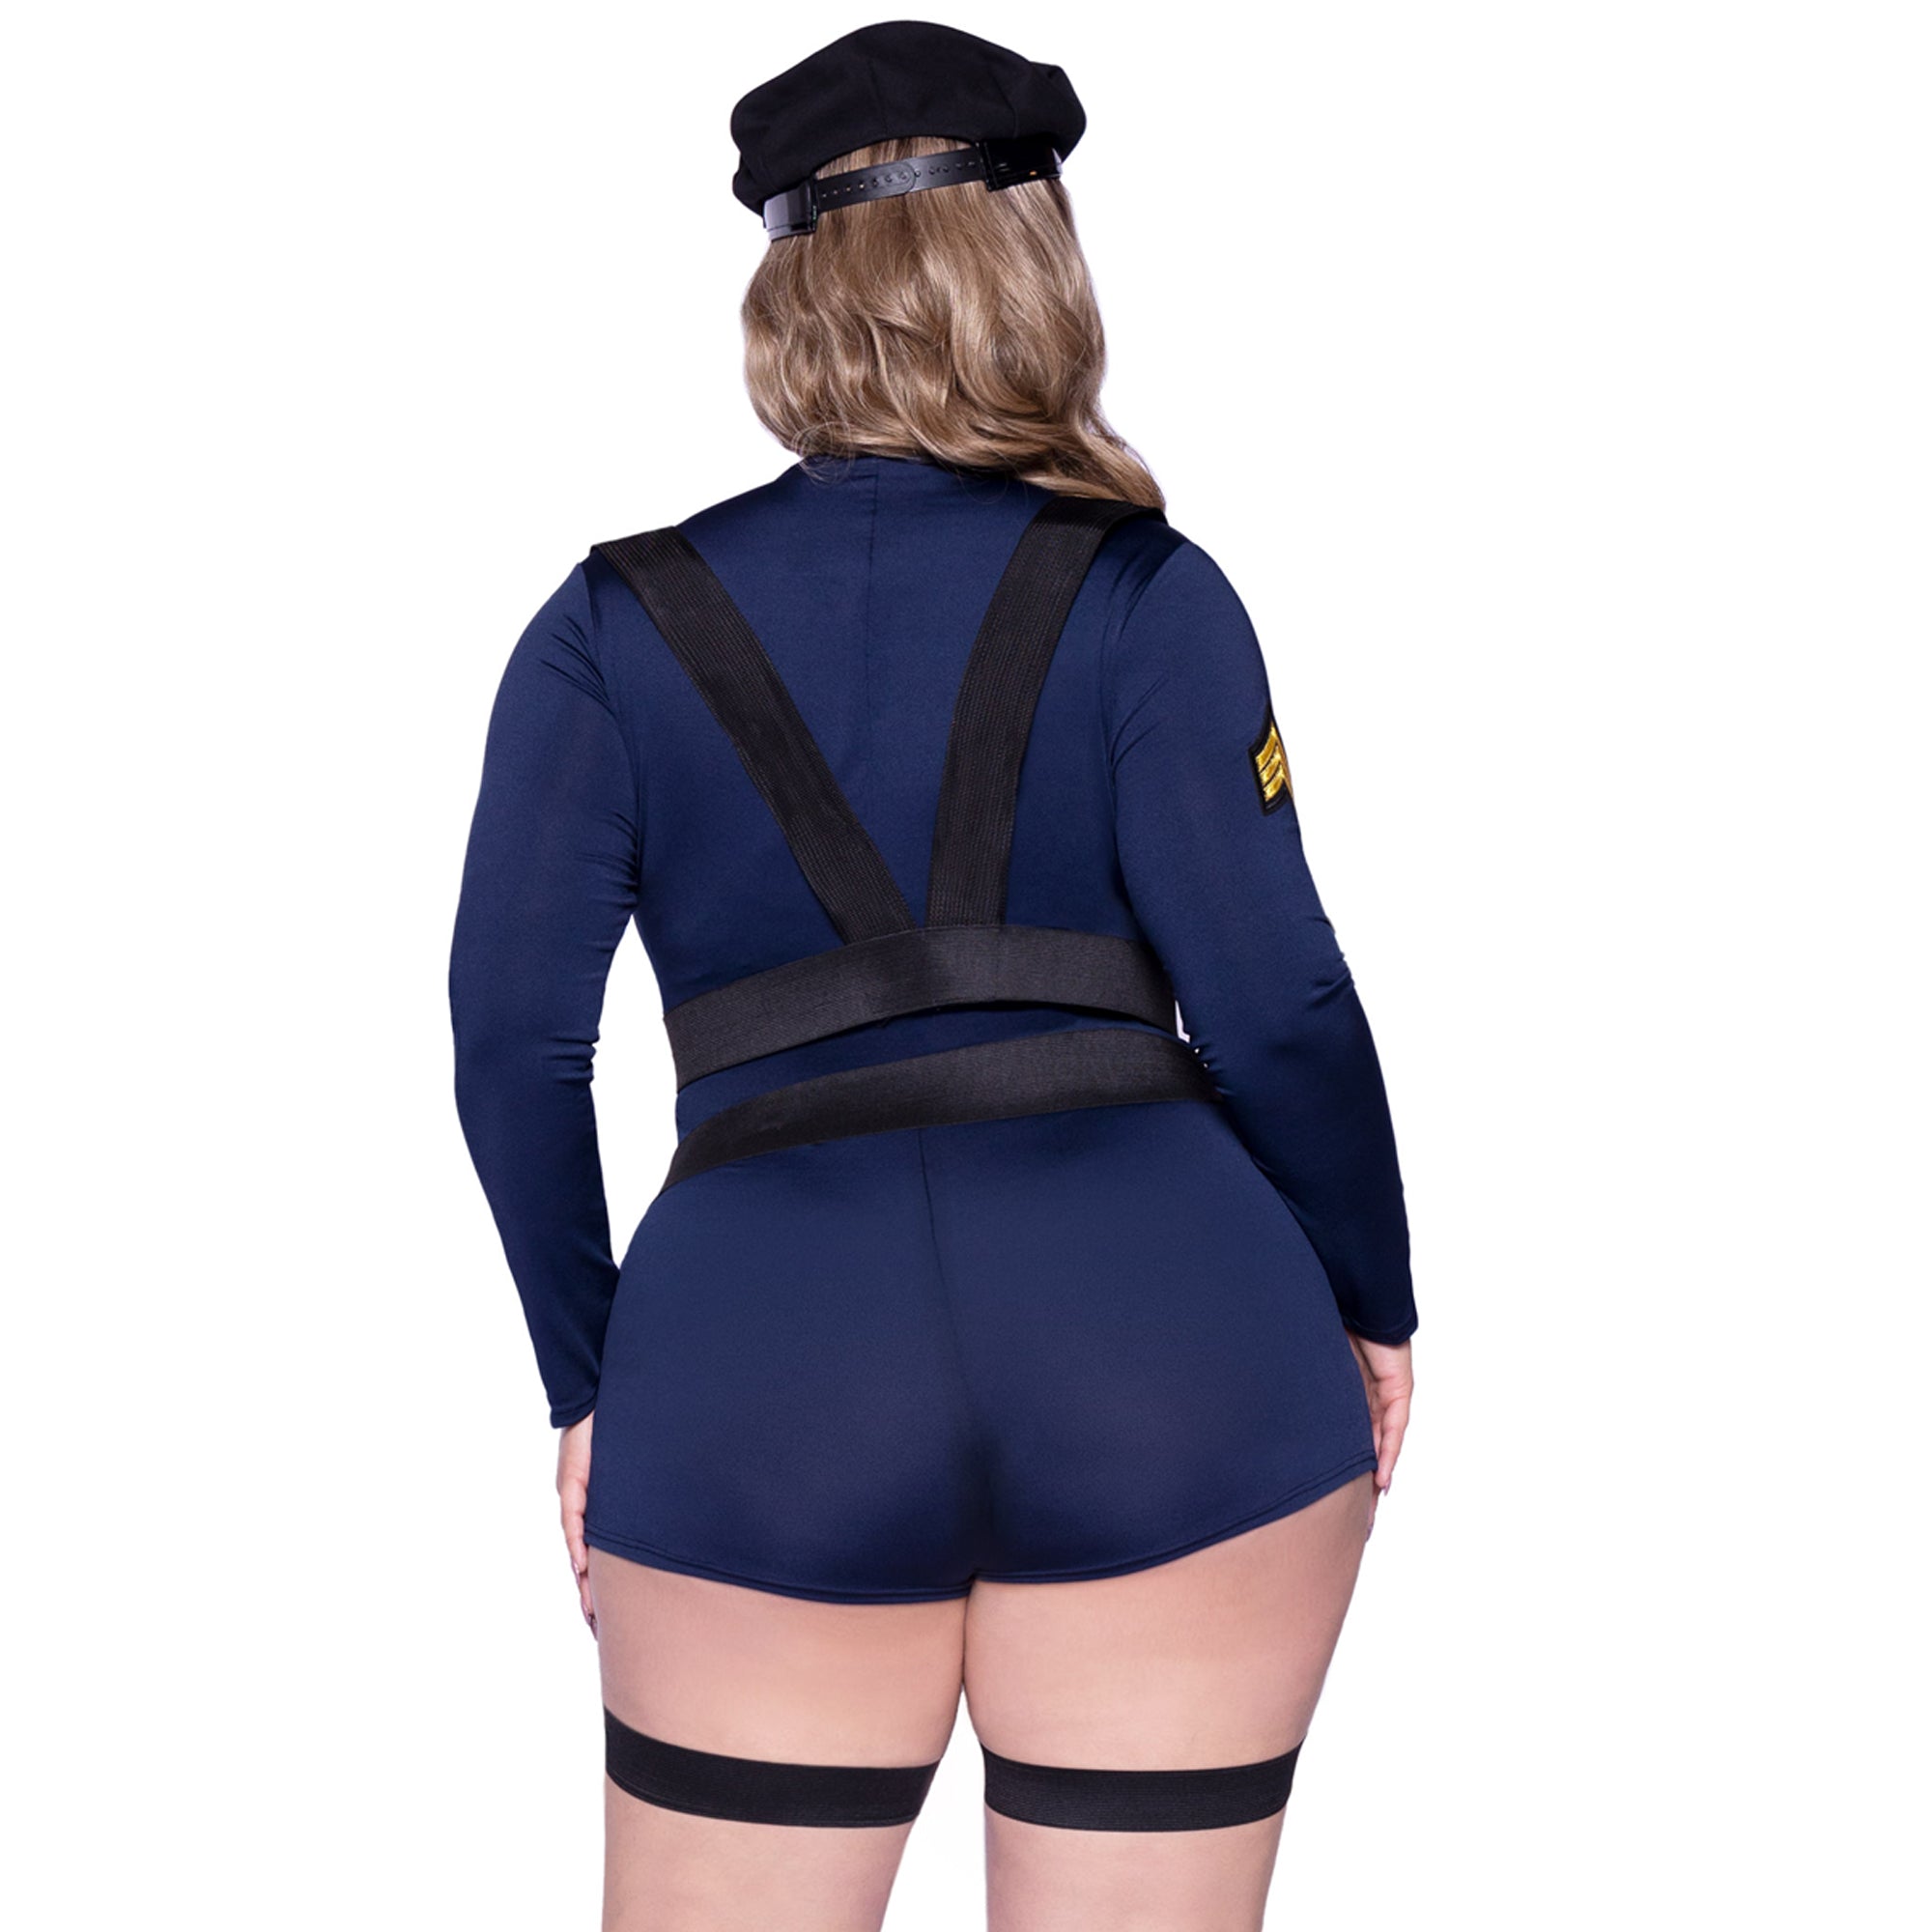 Costume de Police pour Hommes - Party Expert